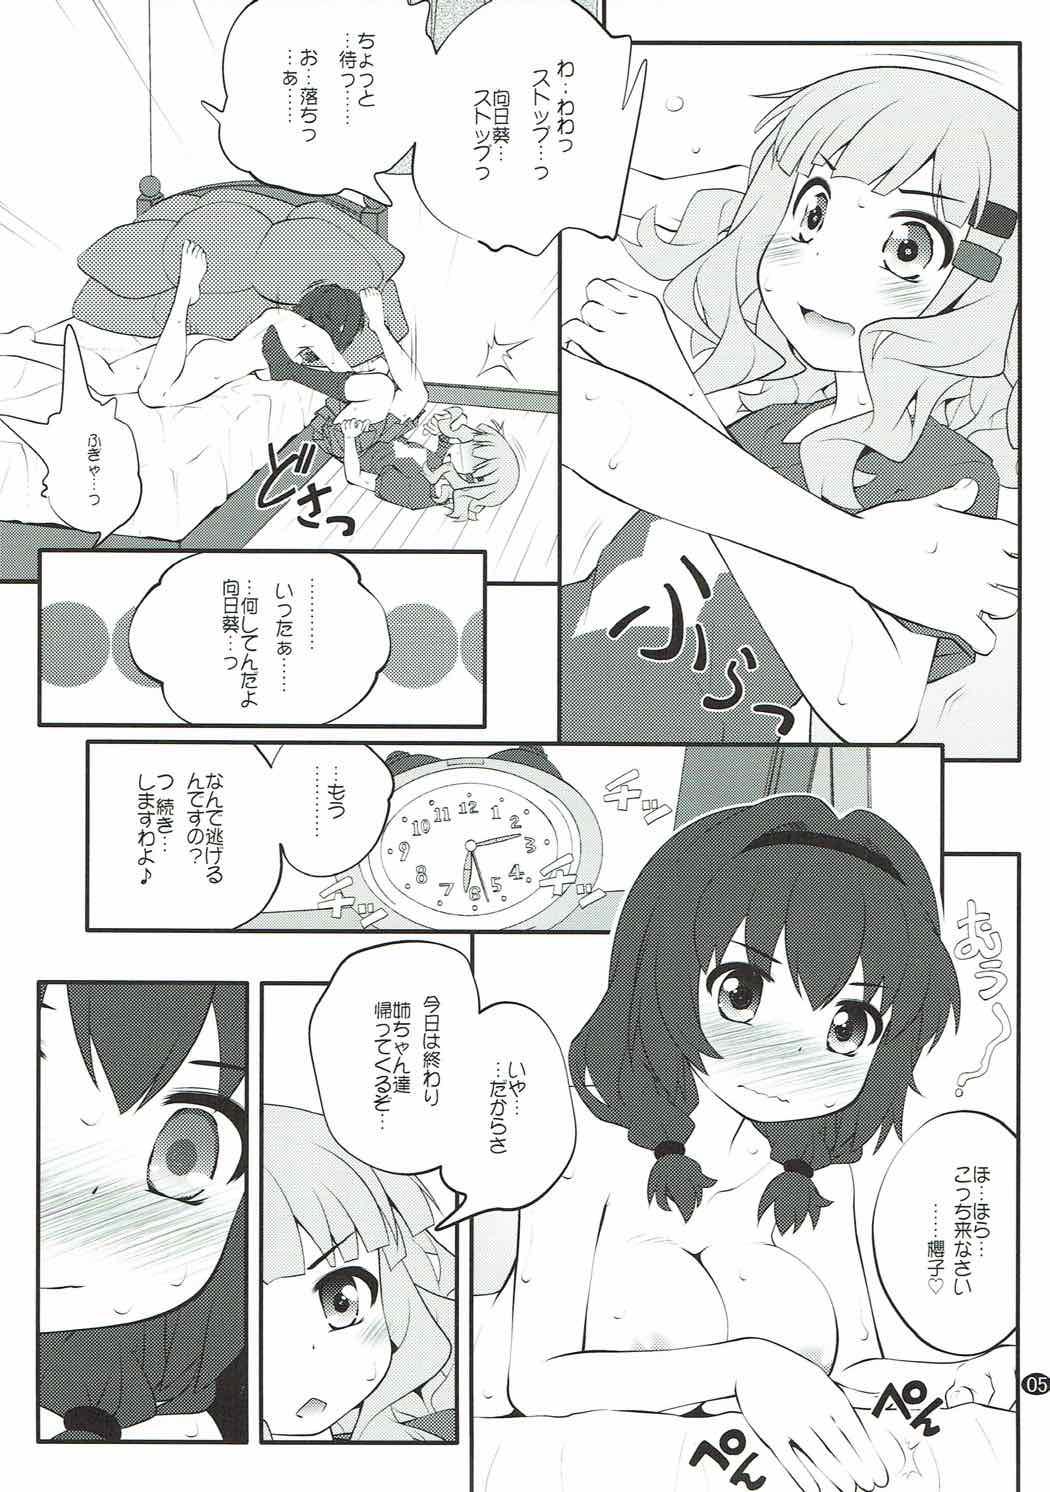 Femdom Porn Himegoto Flowers 11 - Yuruyuri Amateur Asian - Page 4